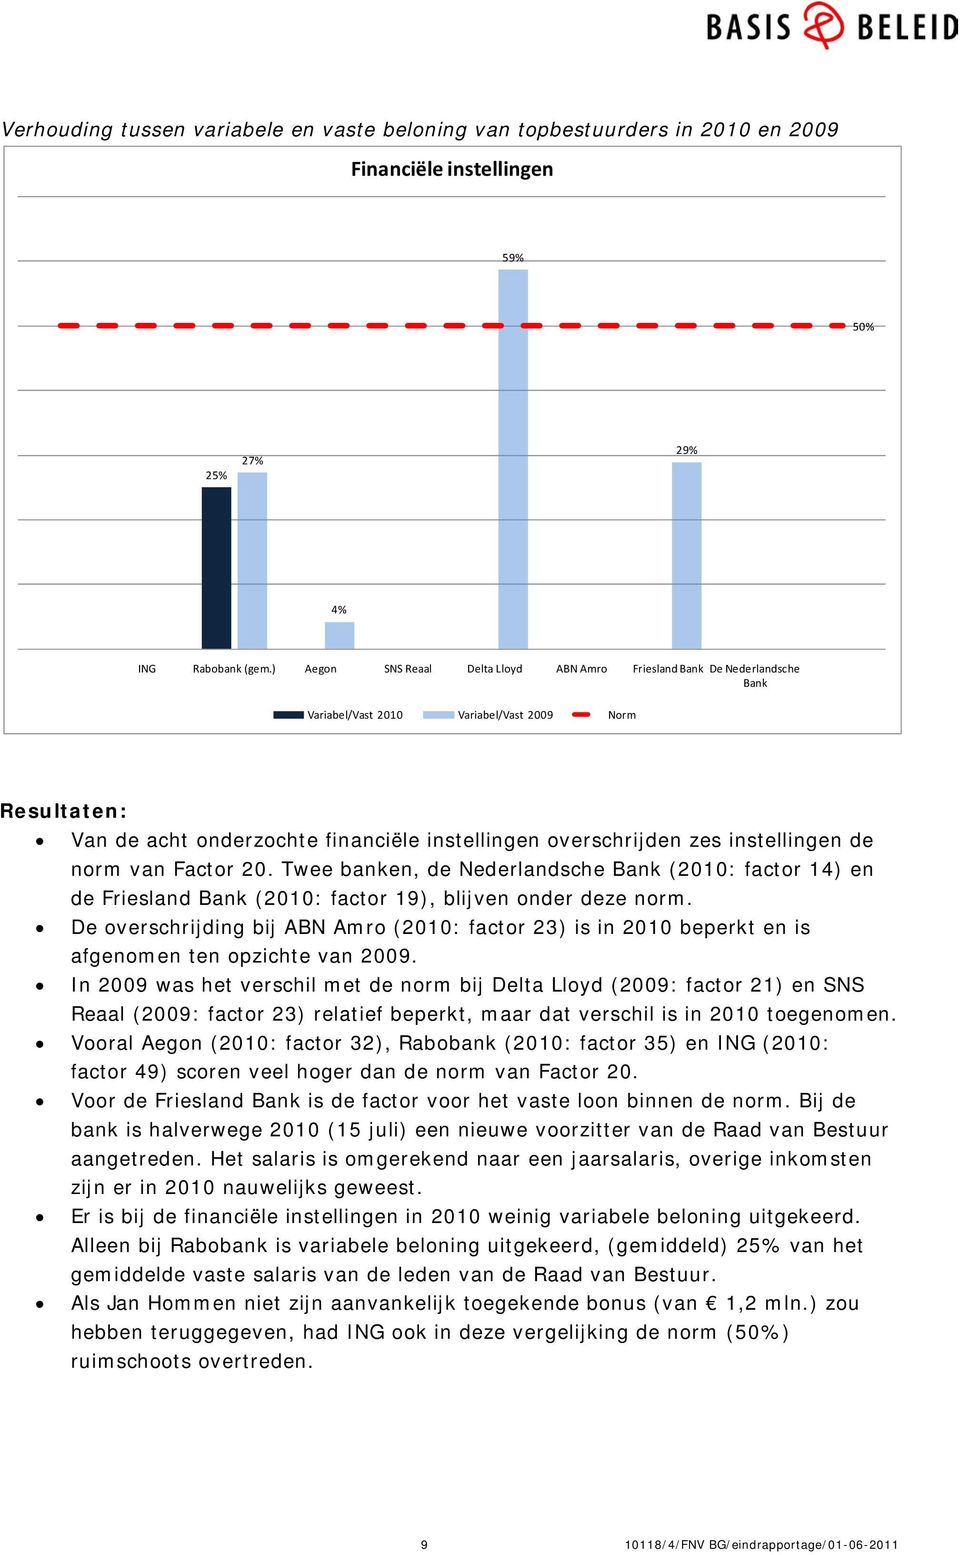 instellingen de norm van Factor 20. Twee banken, de Nederlandsche Bank (2010: factor 14) en de Friesland Bank (2010: factor 19), blijven onder deze norm.